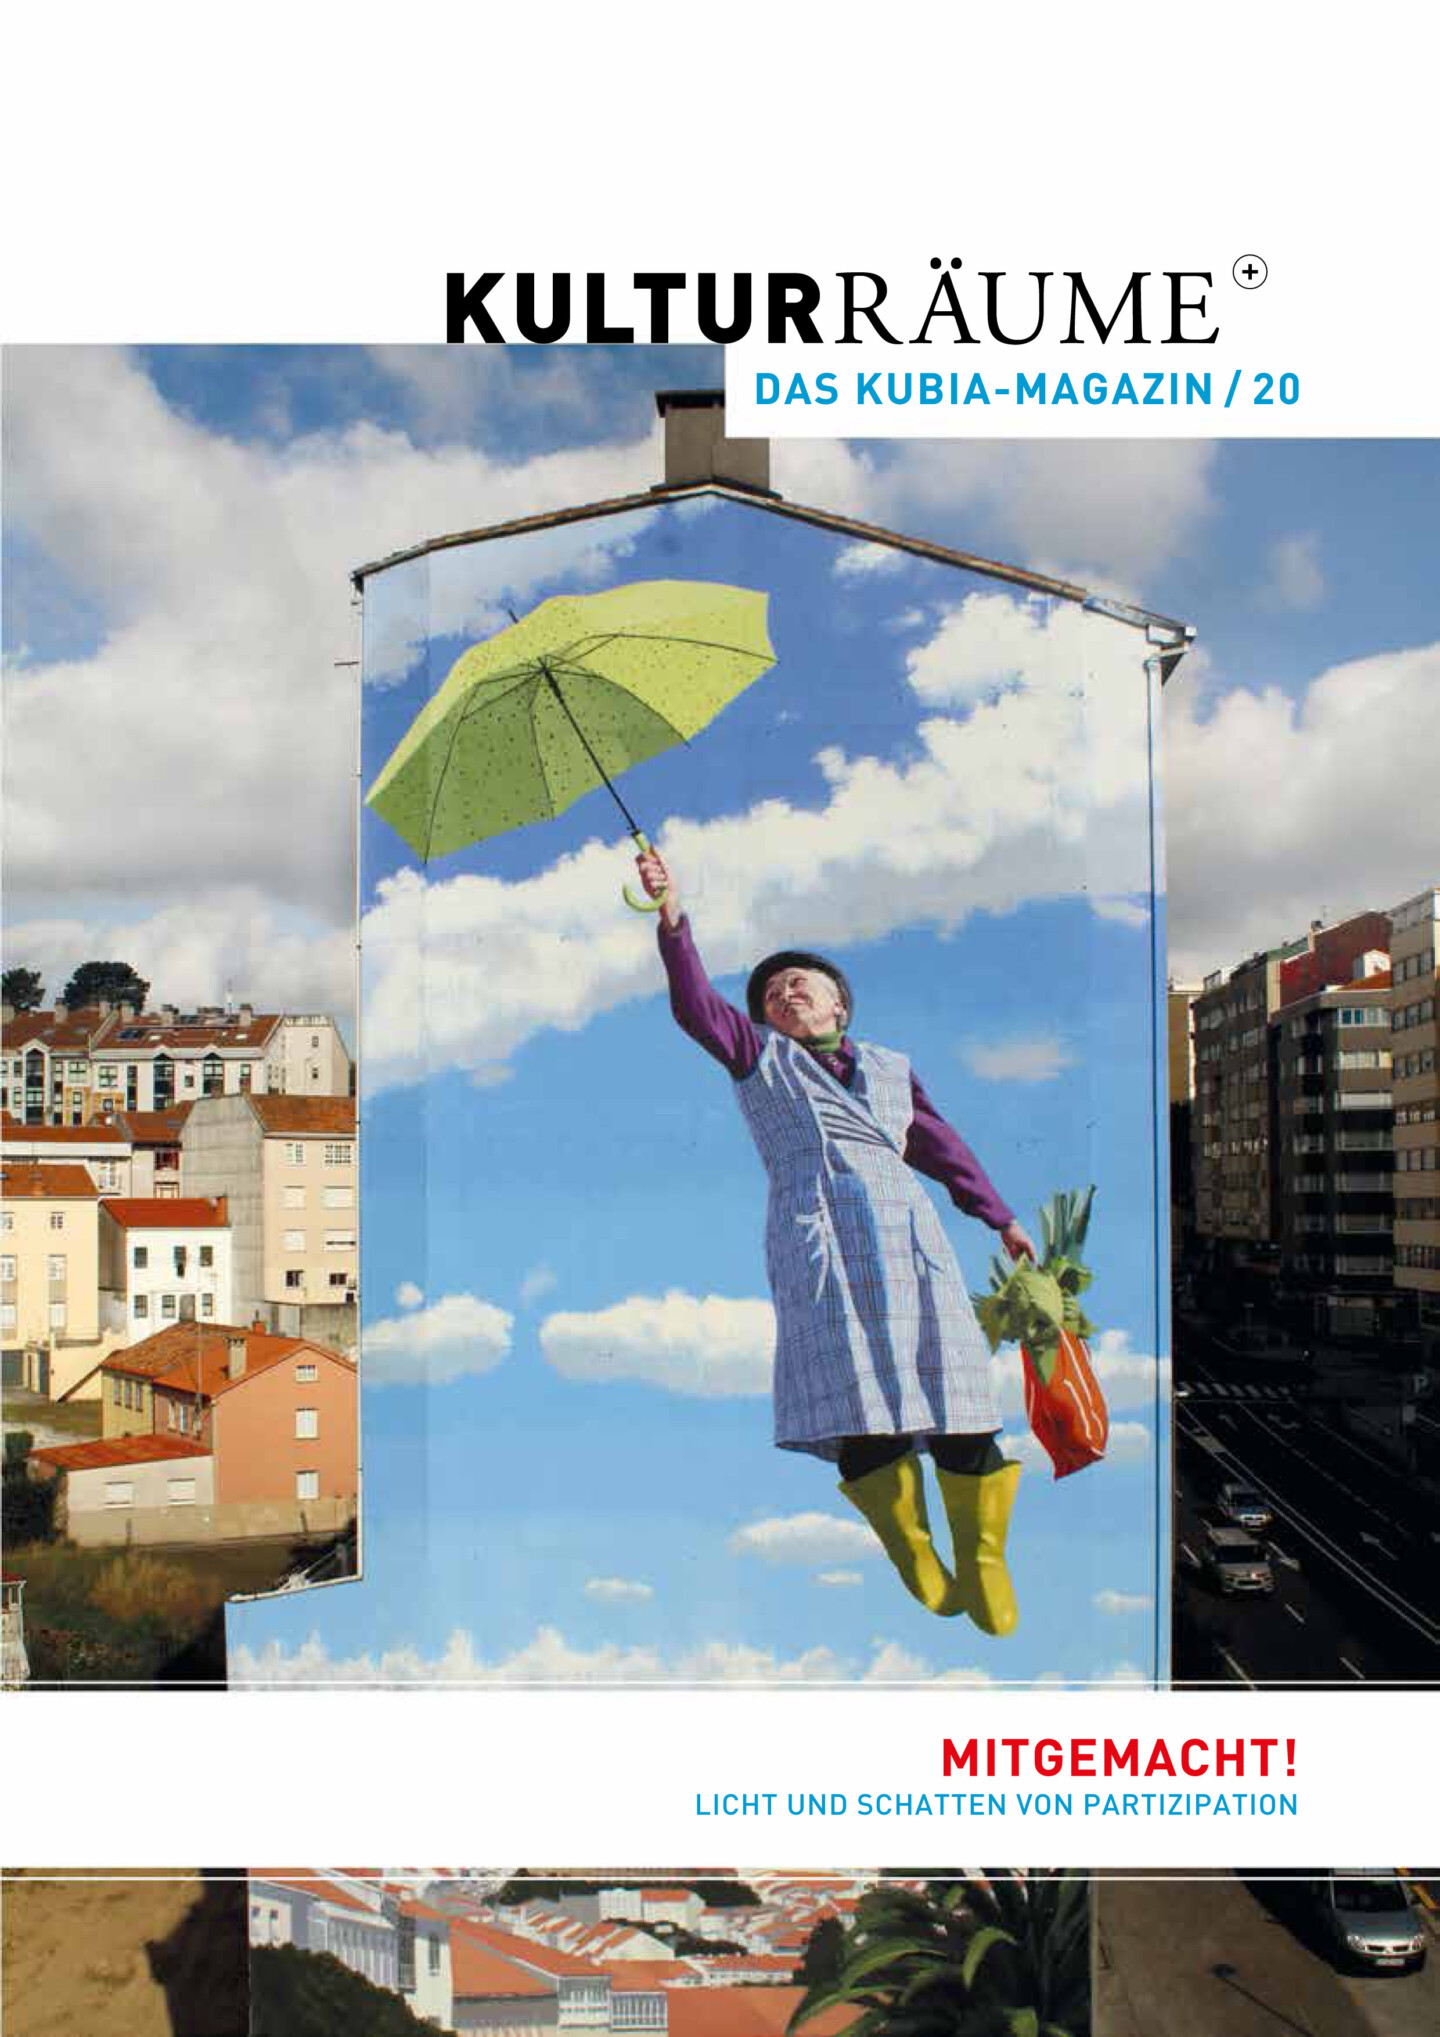 Cover Kulturräume 20/2021. Foto von Yoseba MP von seinem großformatigen Fassadengemälde. Gemälde einer galizischen älteren Frau in Kittelschürze, Gummistiefeln und Einkaufstasche, die wie Mary Poppins per Regenschirm durch die Lüfte fliegt